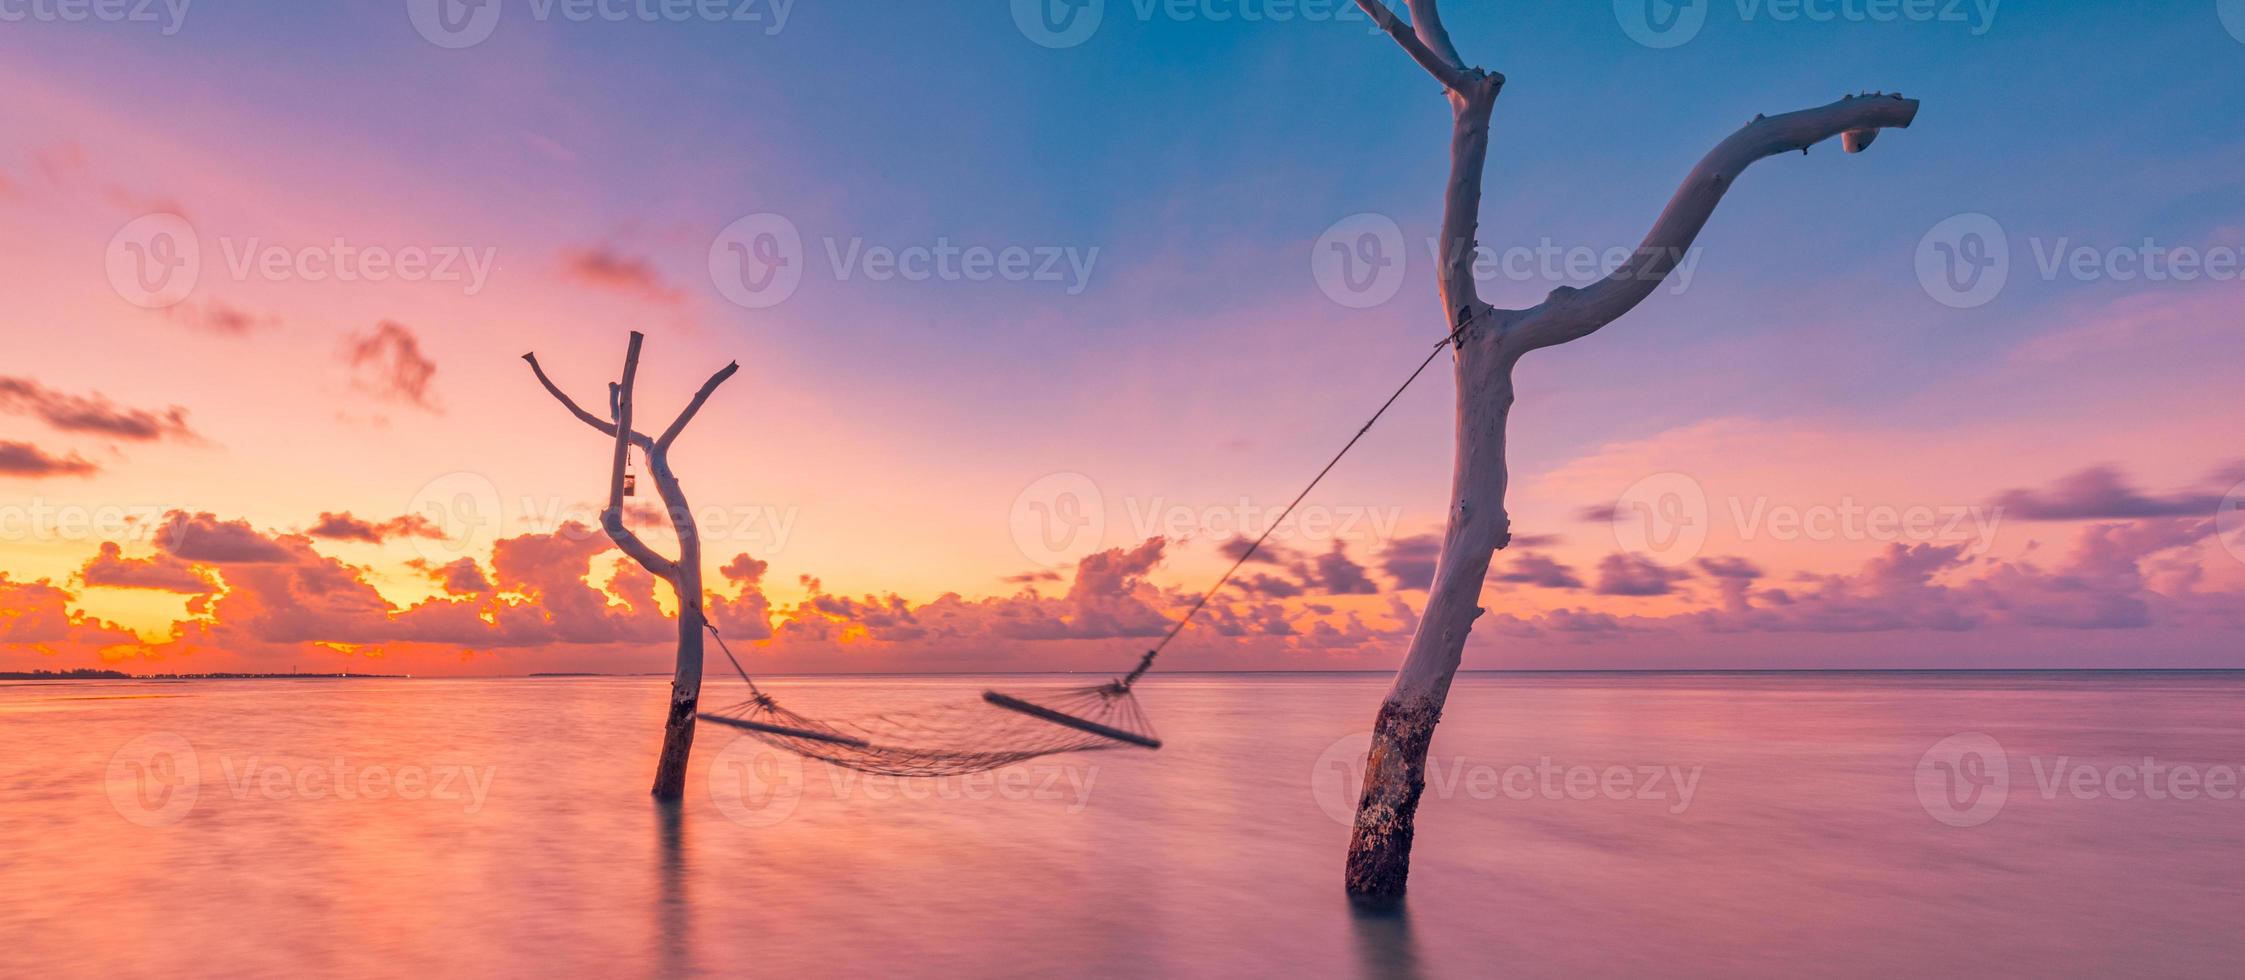 sommerferien vorlage. Sonnenuntergang über der Wasserhängematte in der tropischen Meereslagune. entspannender romantischer himmel mit bunten wolken, traumurlaub, liebesromanpaarkonzept. Weggeworfen, erstaunliche Naturlandschaft foto